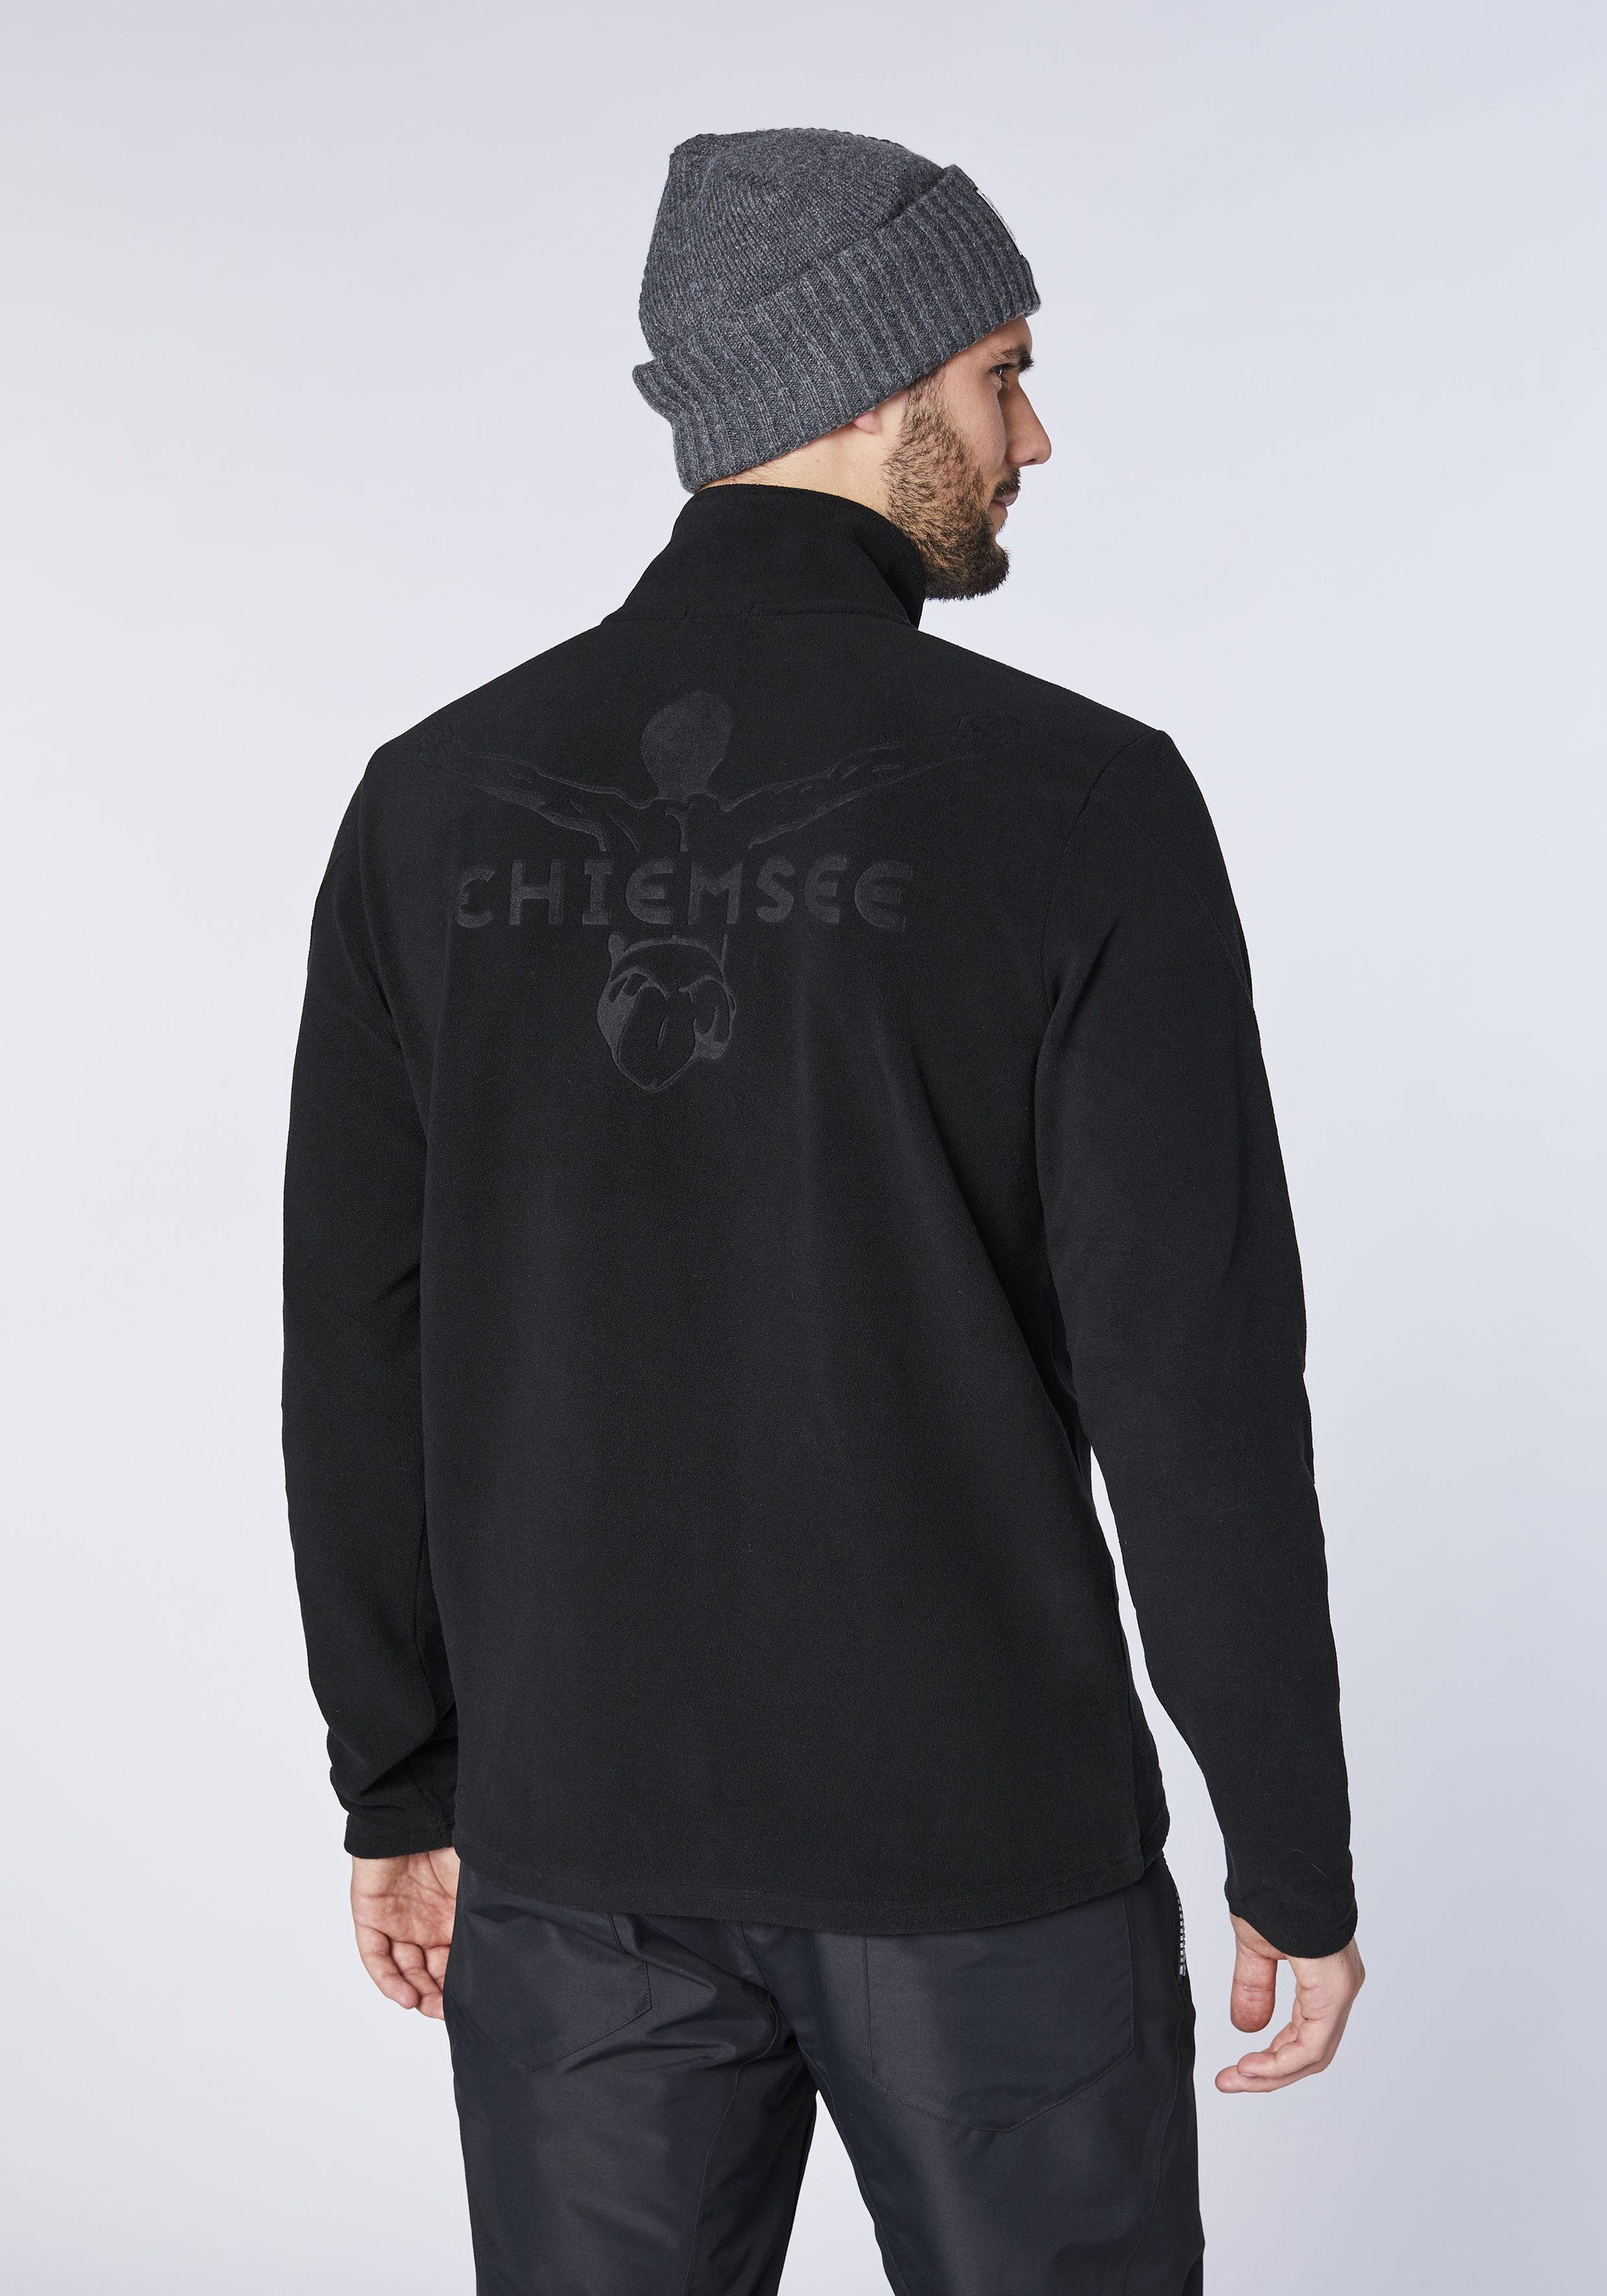 Jumper-Motiv im Basic-Stil 1 schwarz Chiemsee Fleecejacke mit Fleece-Jacke